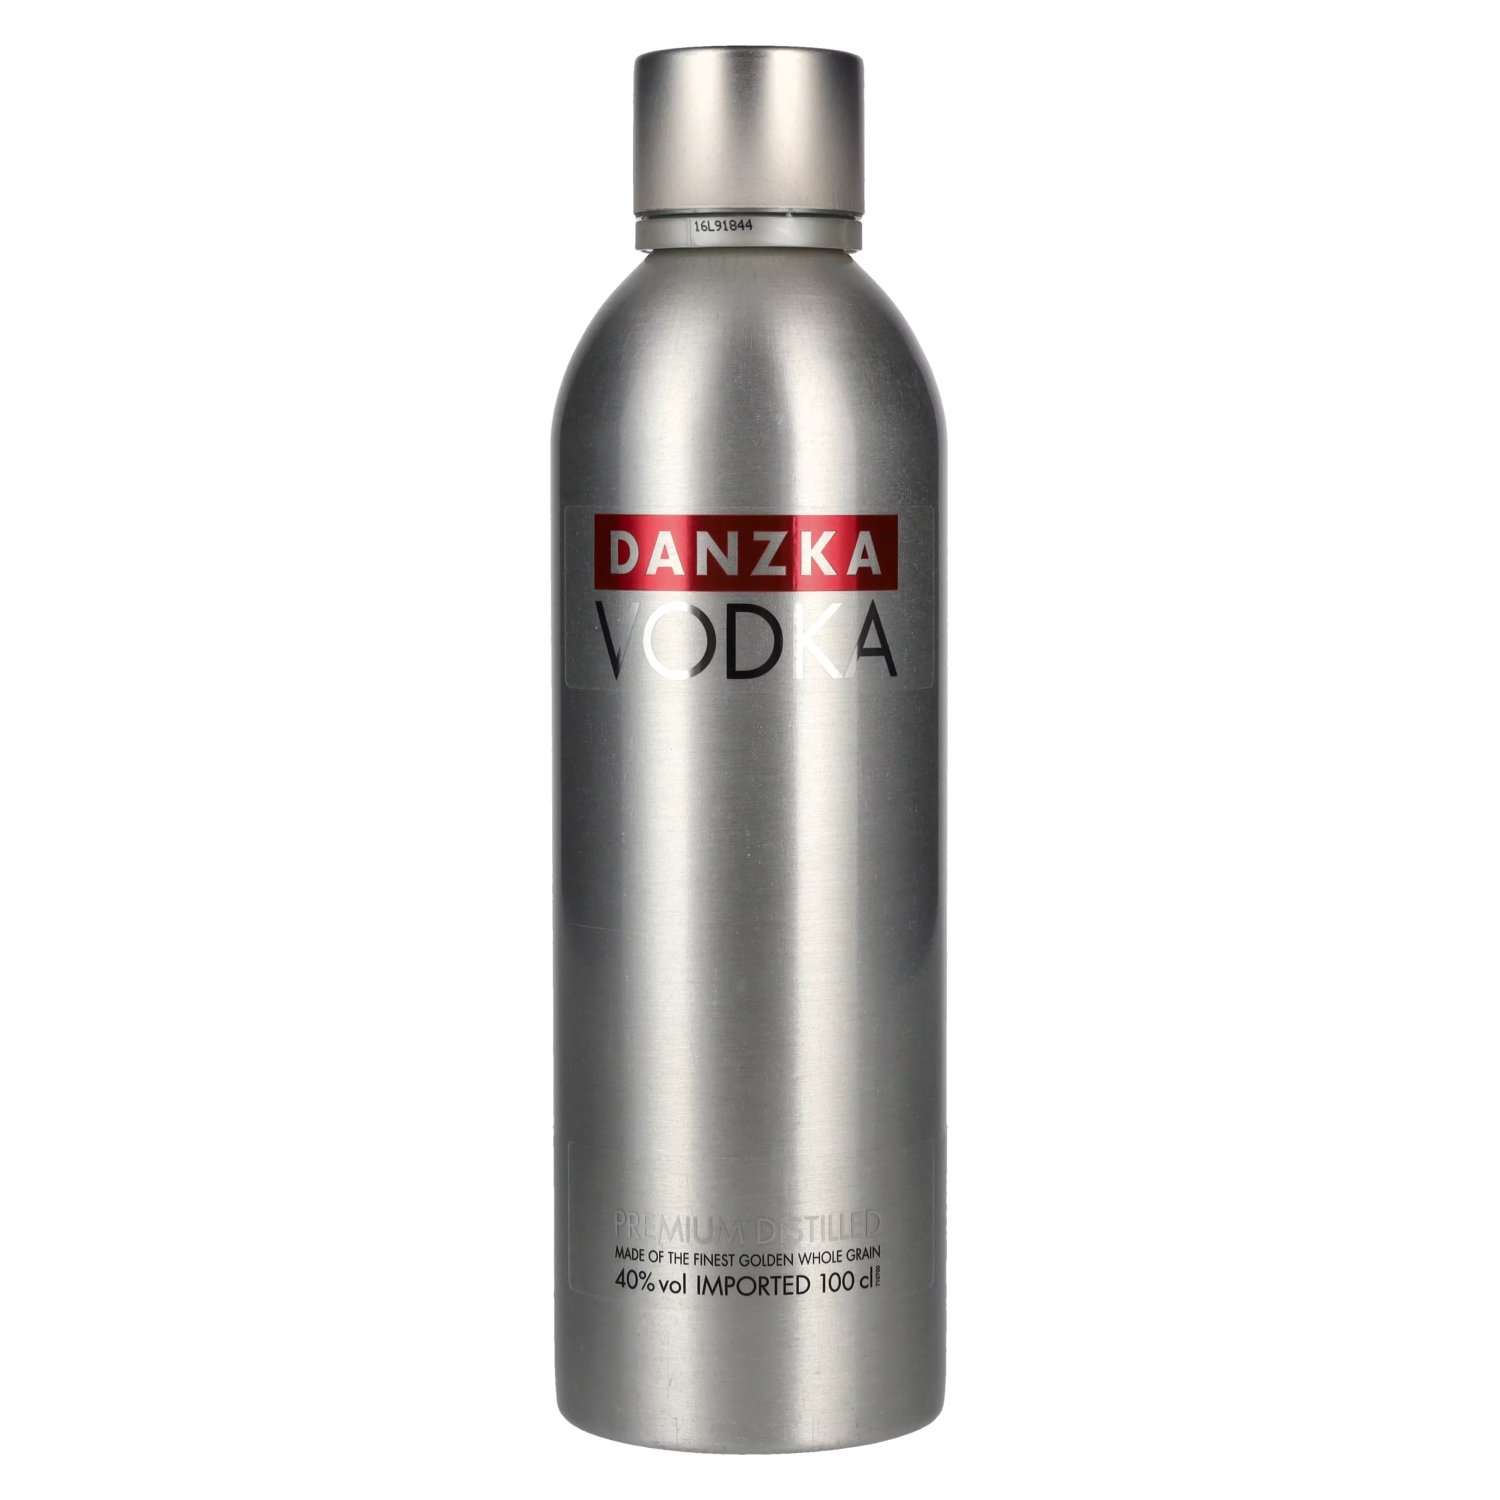 Distilled 40% Danzka ORIGINAL Vodka Vol. Premium 1l